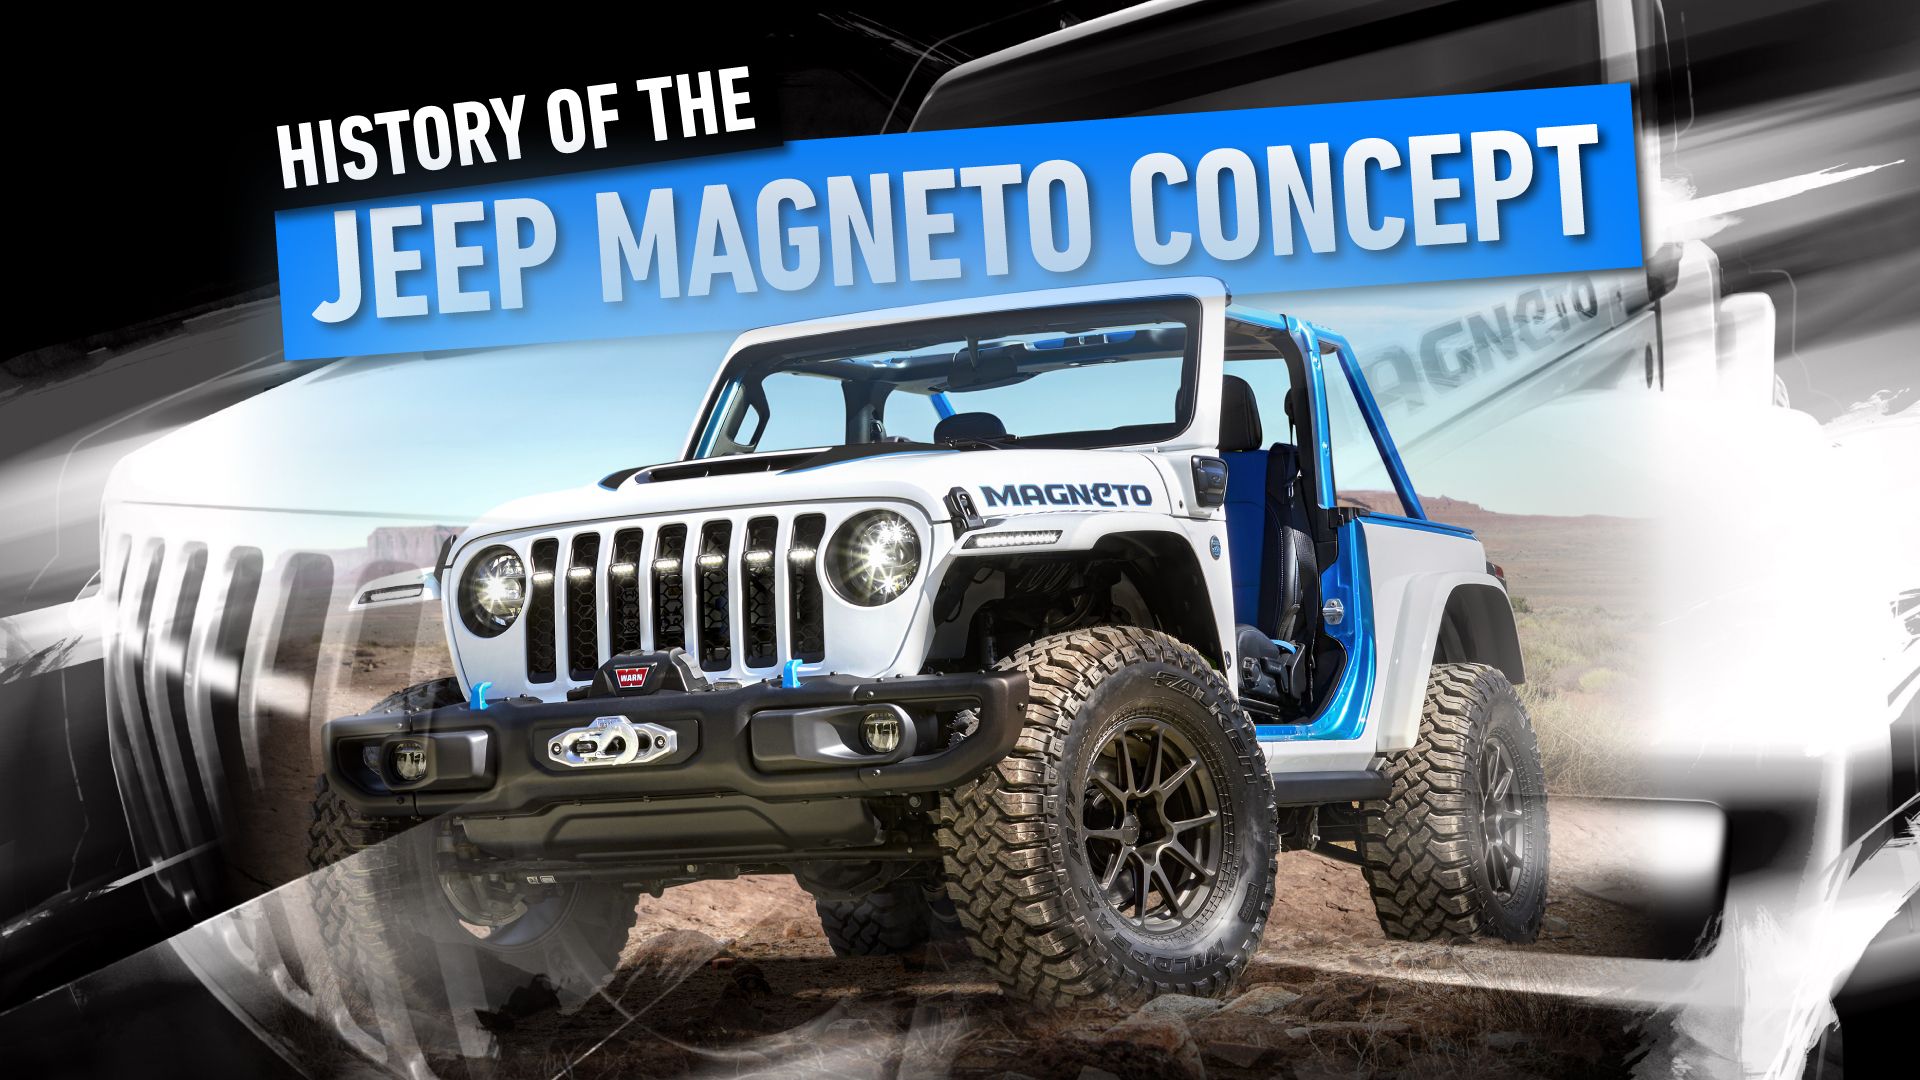 Jeep Magneto Concept